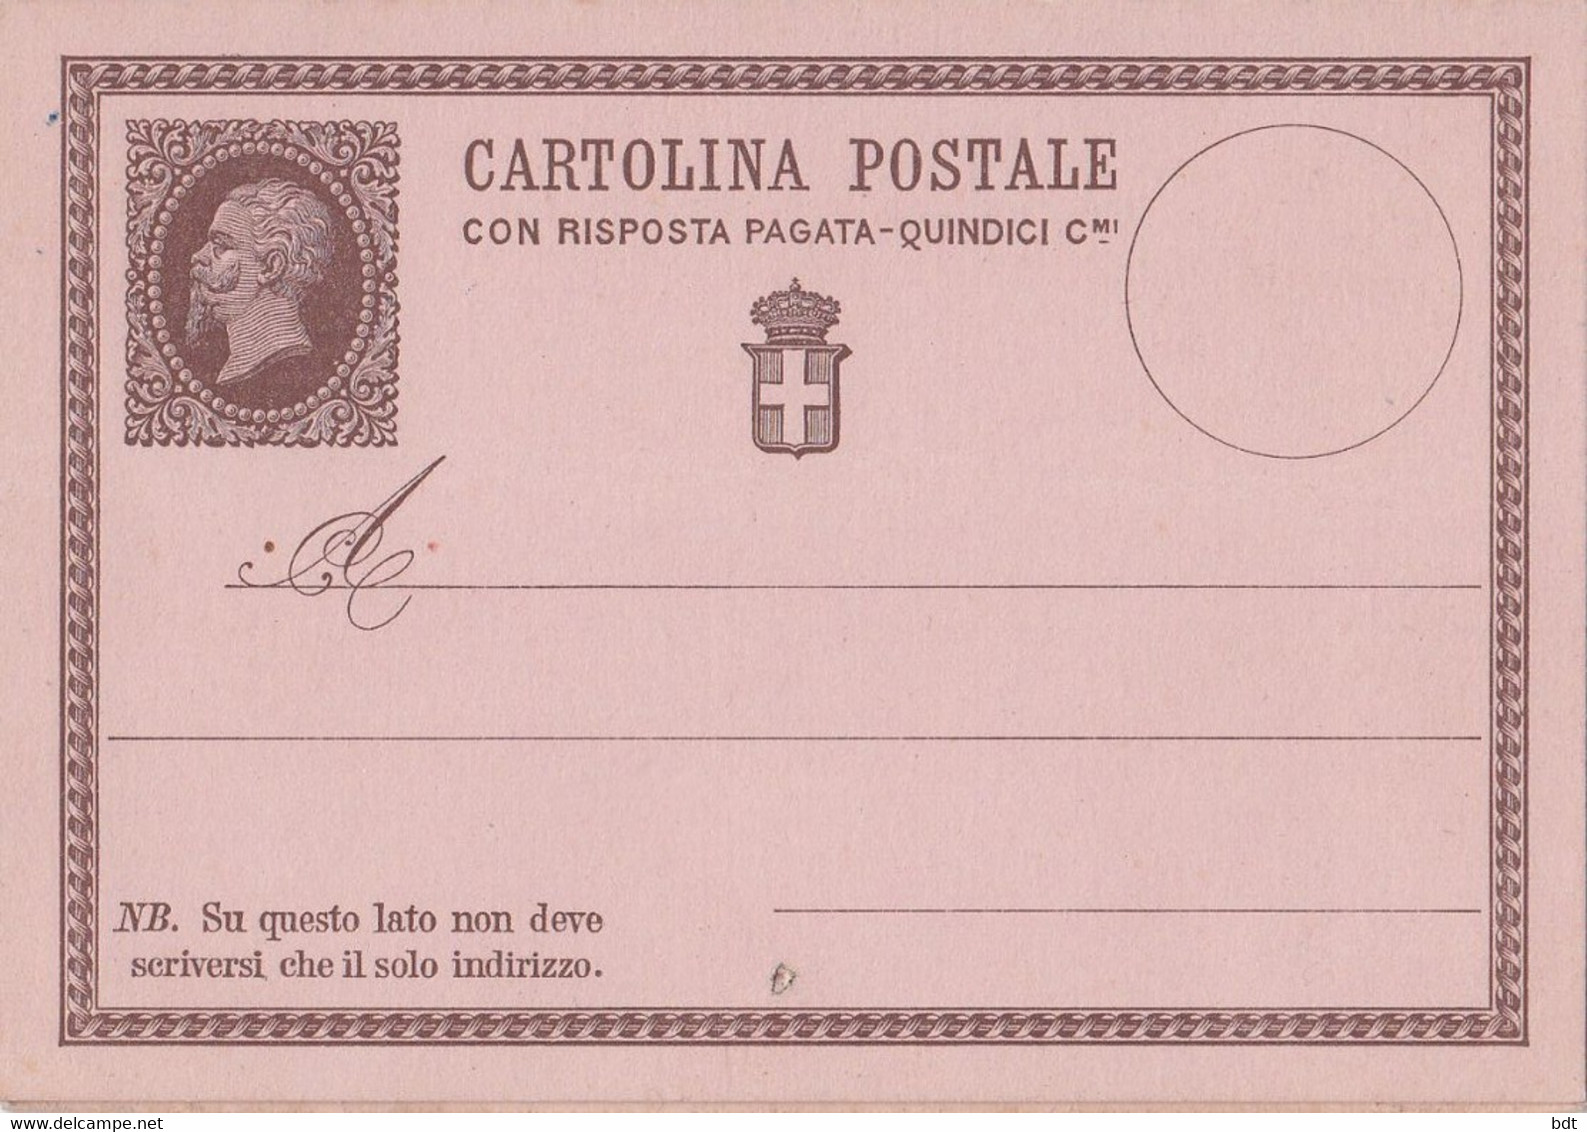 PSI001 INTERI POSTALI REGNO NUOVI - CARTOLINA RISPOSTA PAGATA FILAGRANO C2 - Stamped Stationery